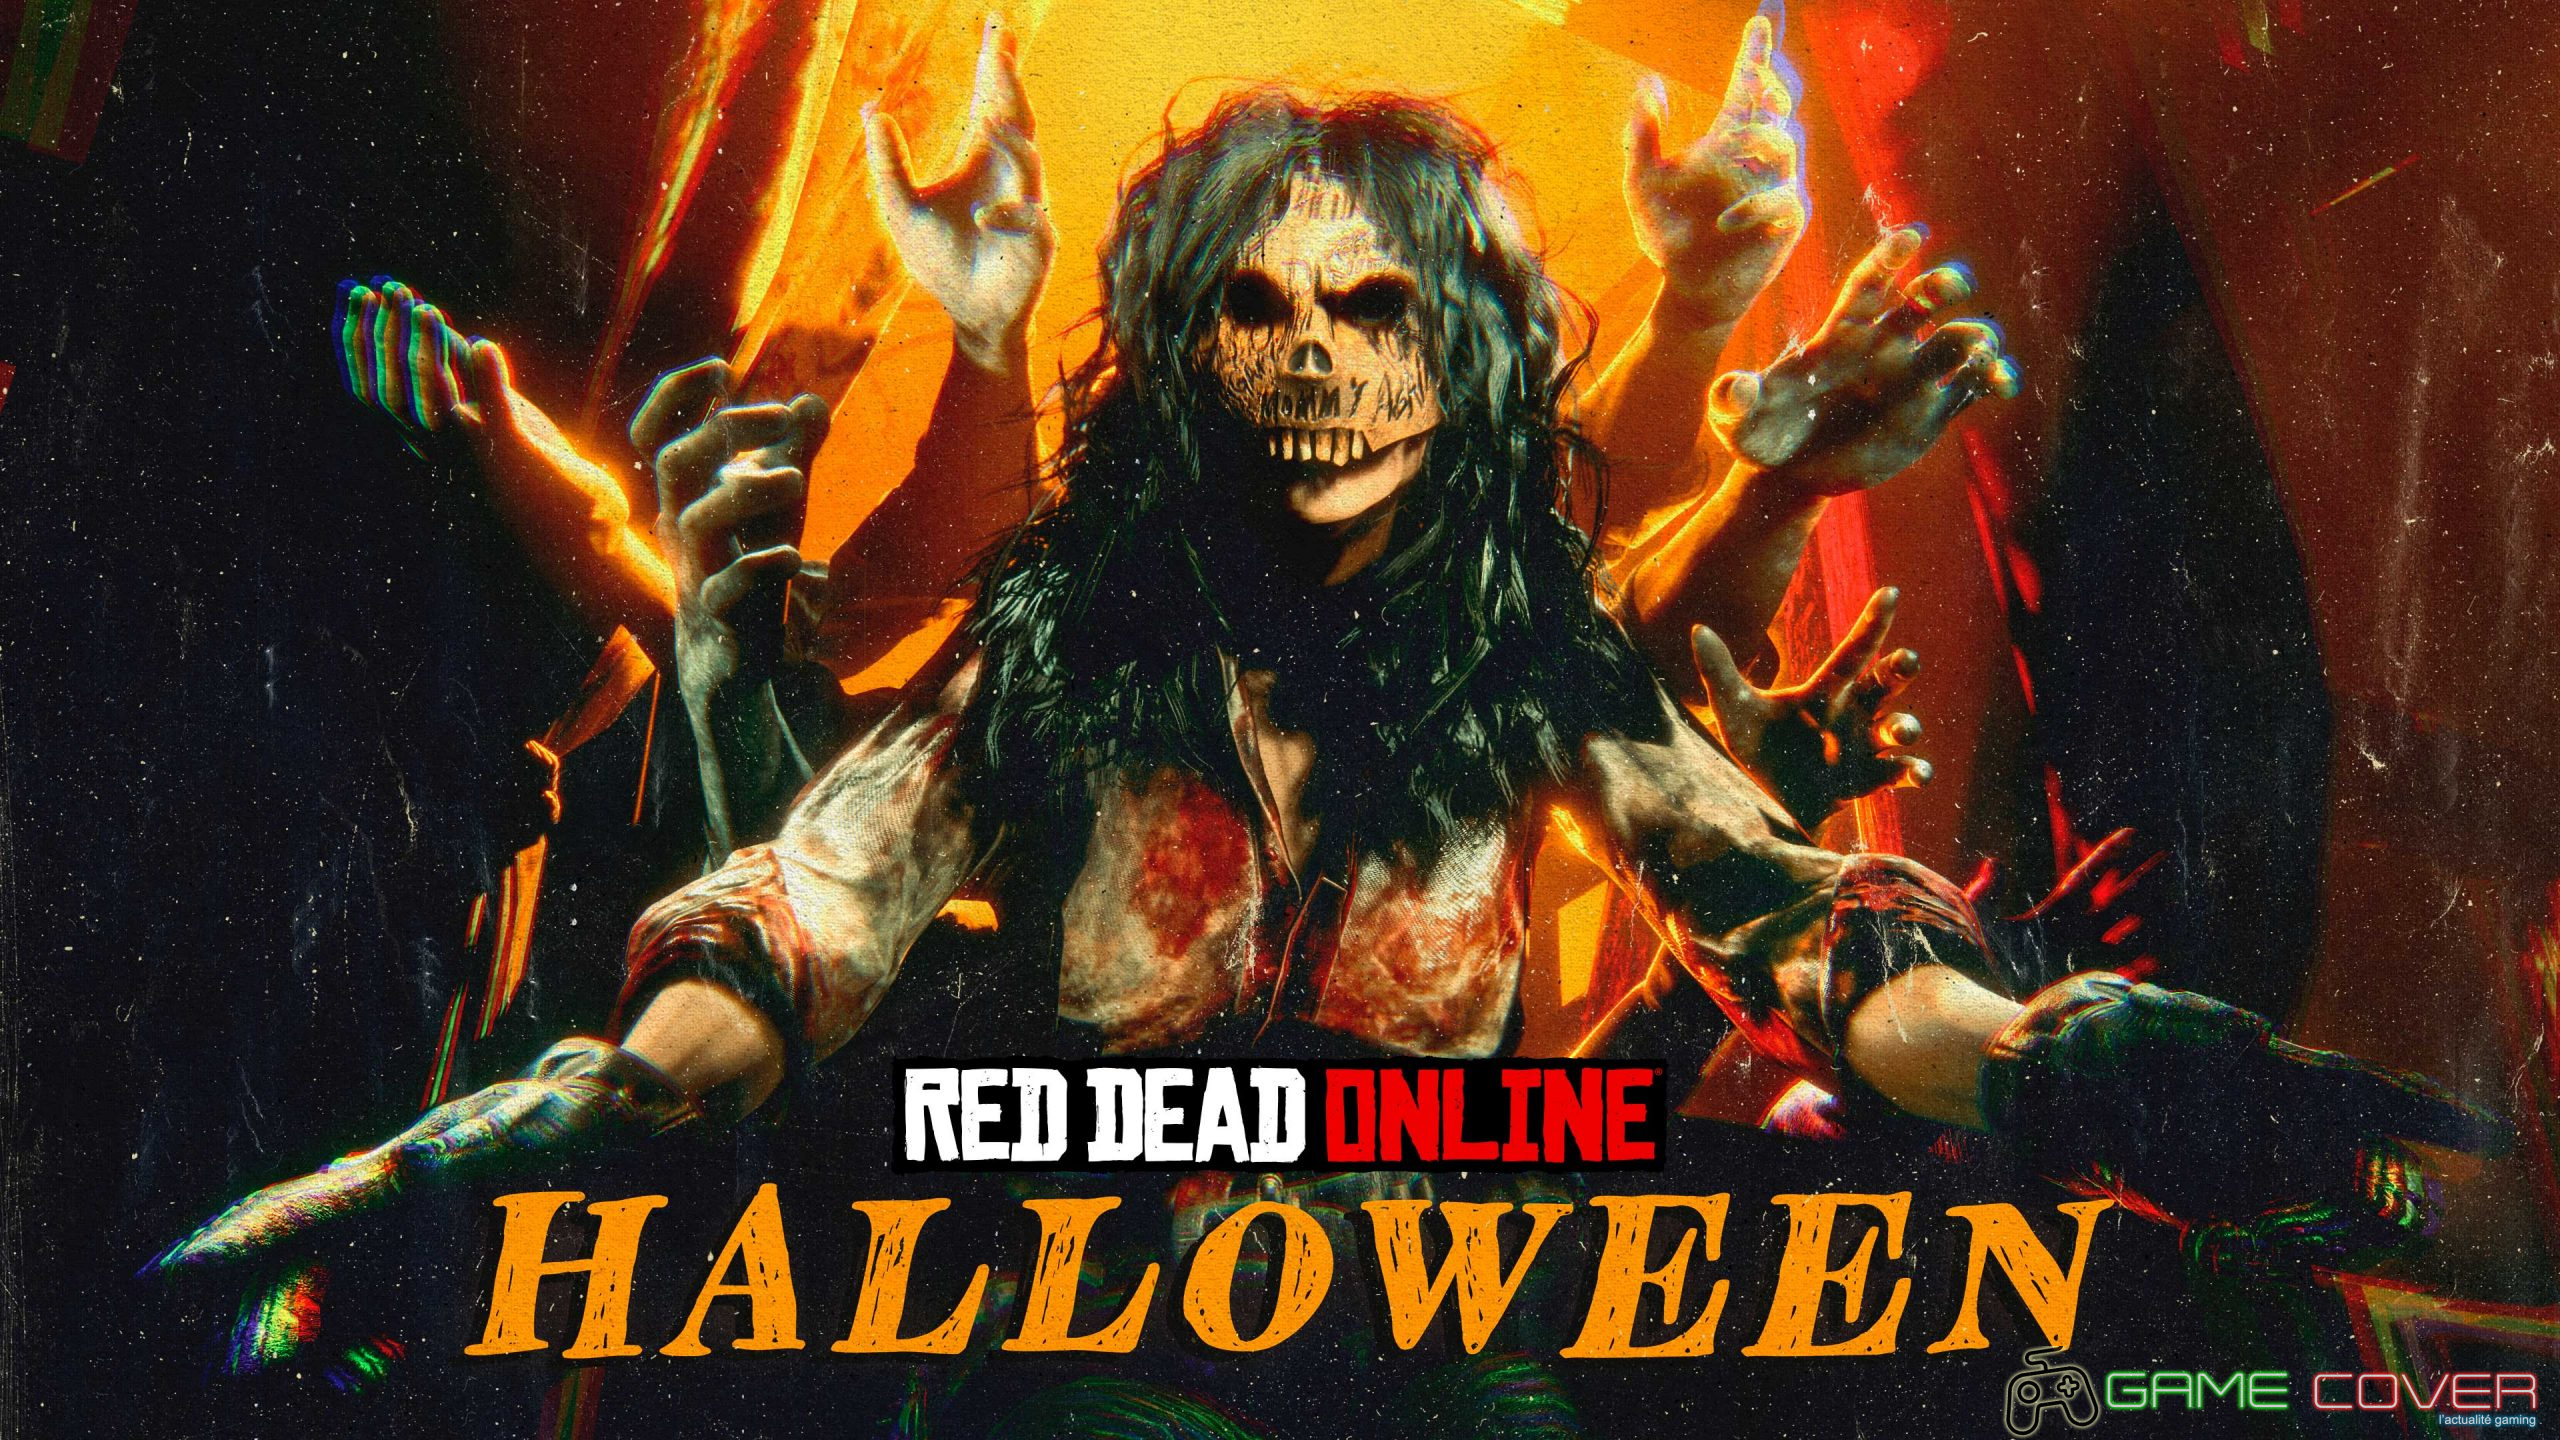 Red Dead Online Halloween